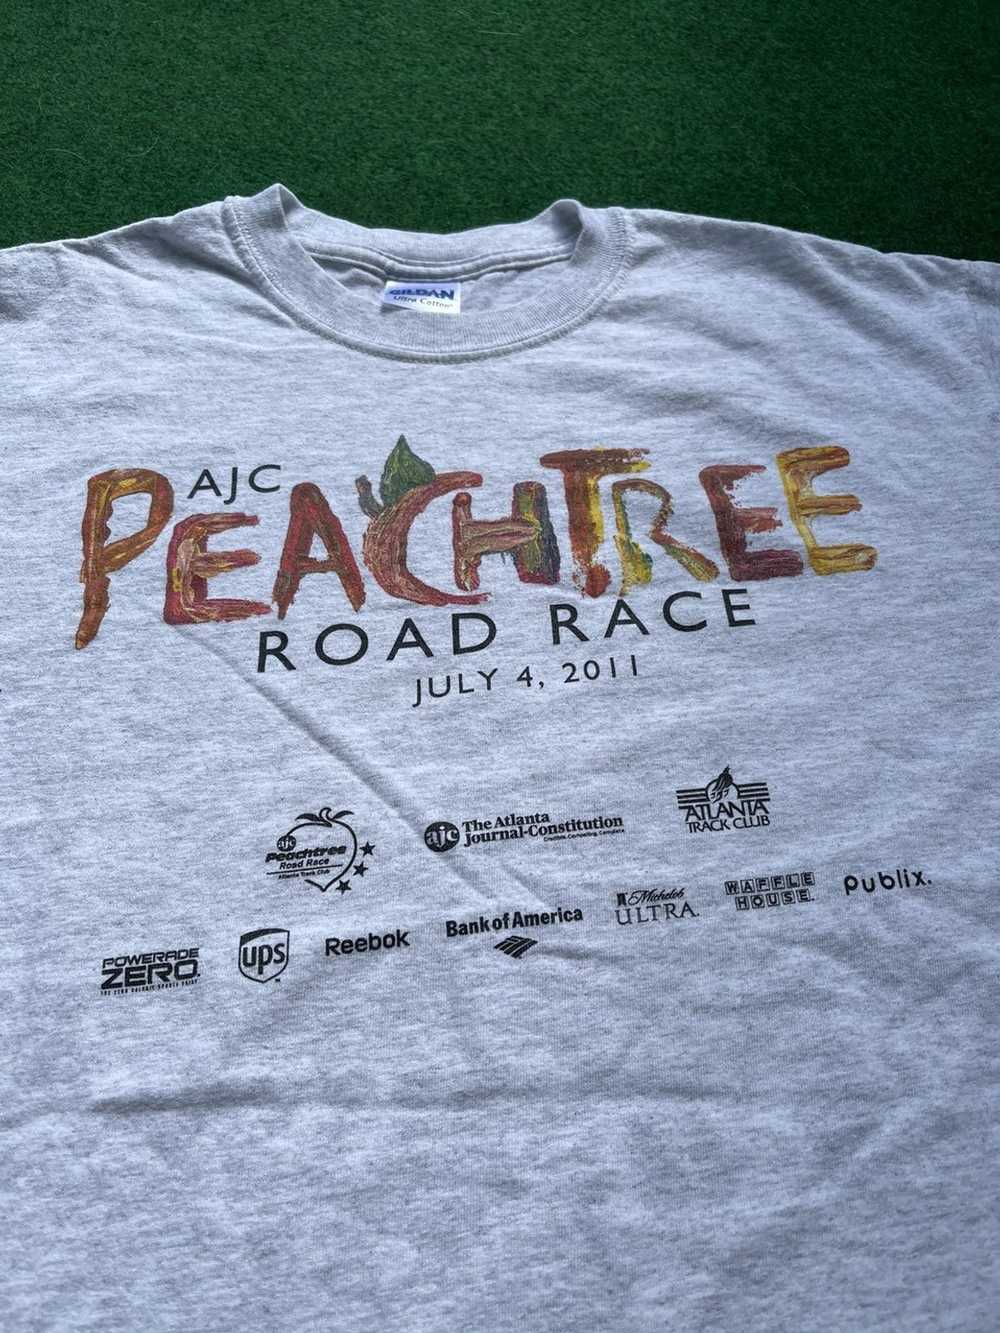 Vintage Vintage Peachtree Road Race Tee - image 2